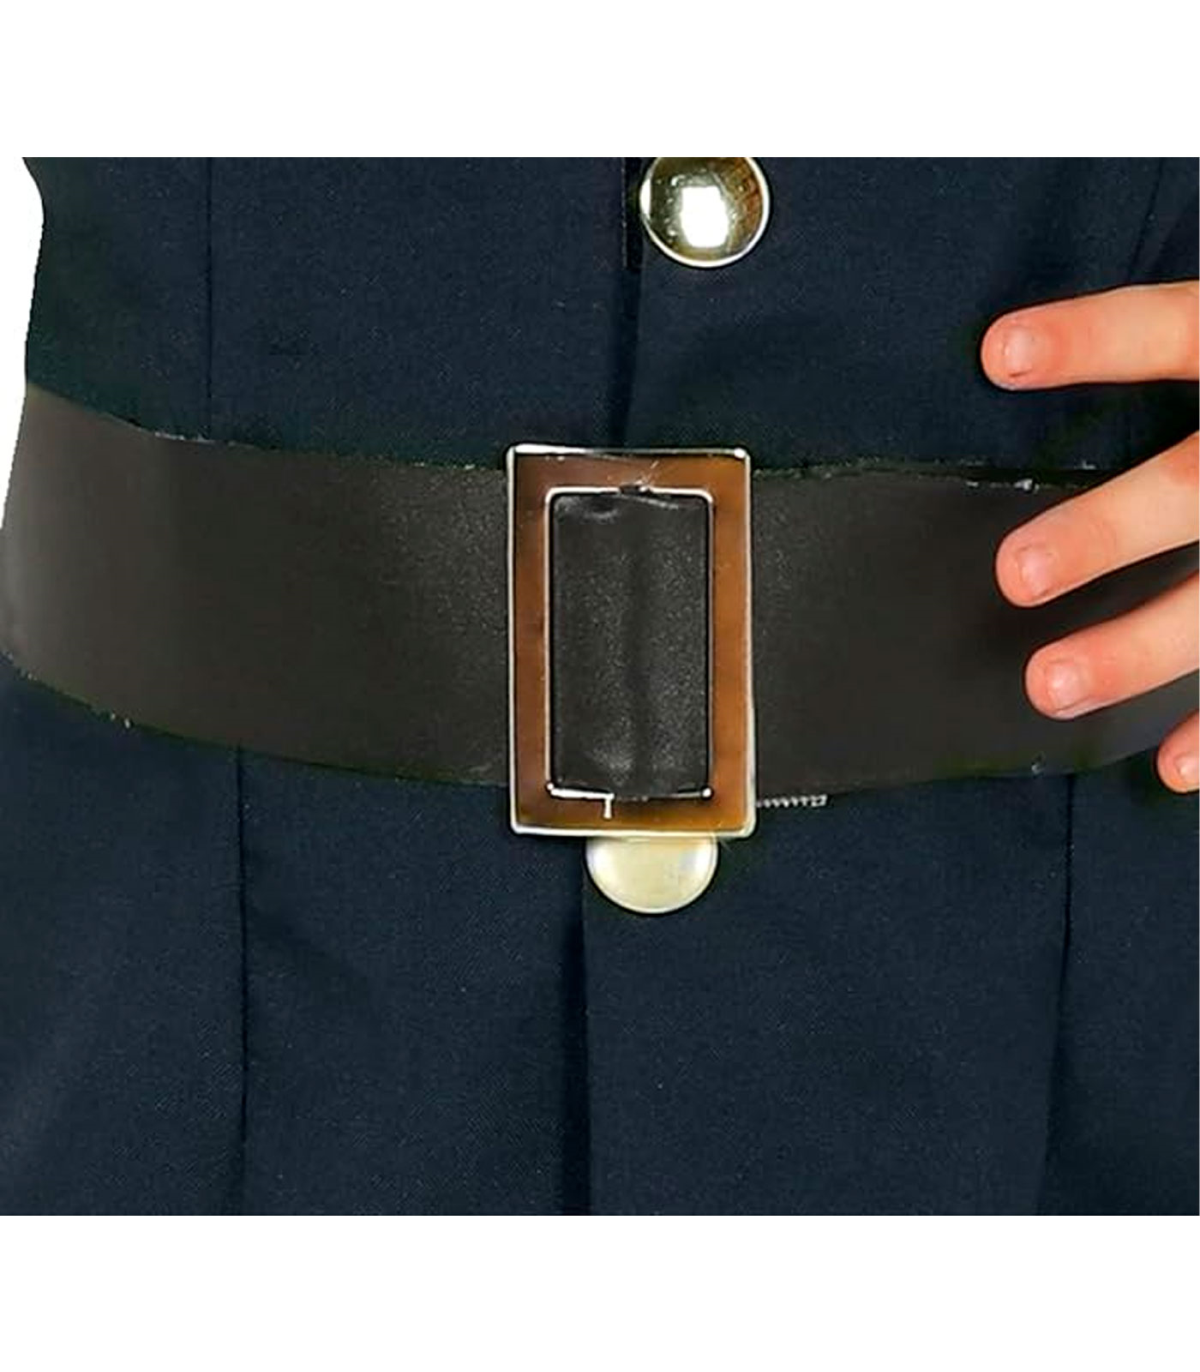 ▷ Comprar Cinturón Policía con 4 piezas de disfraz